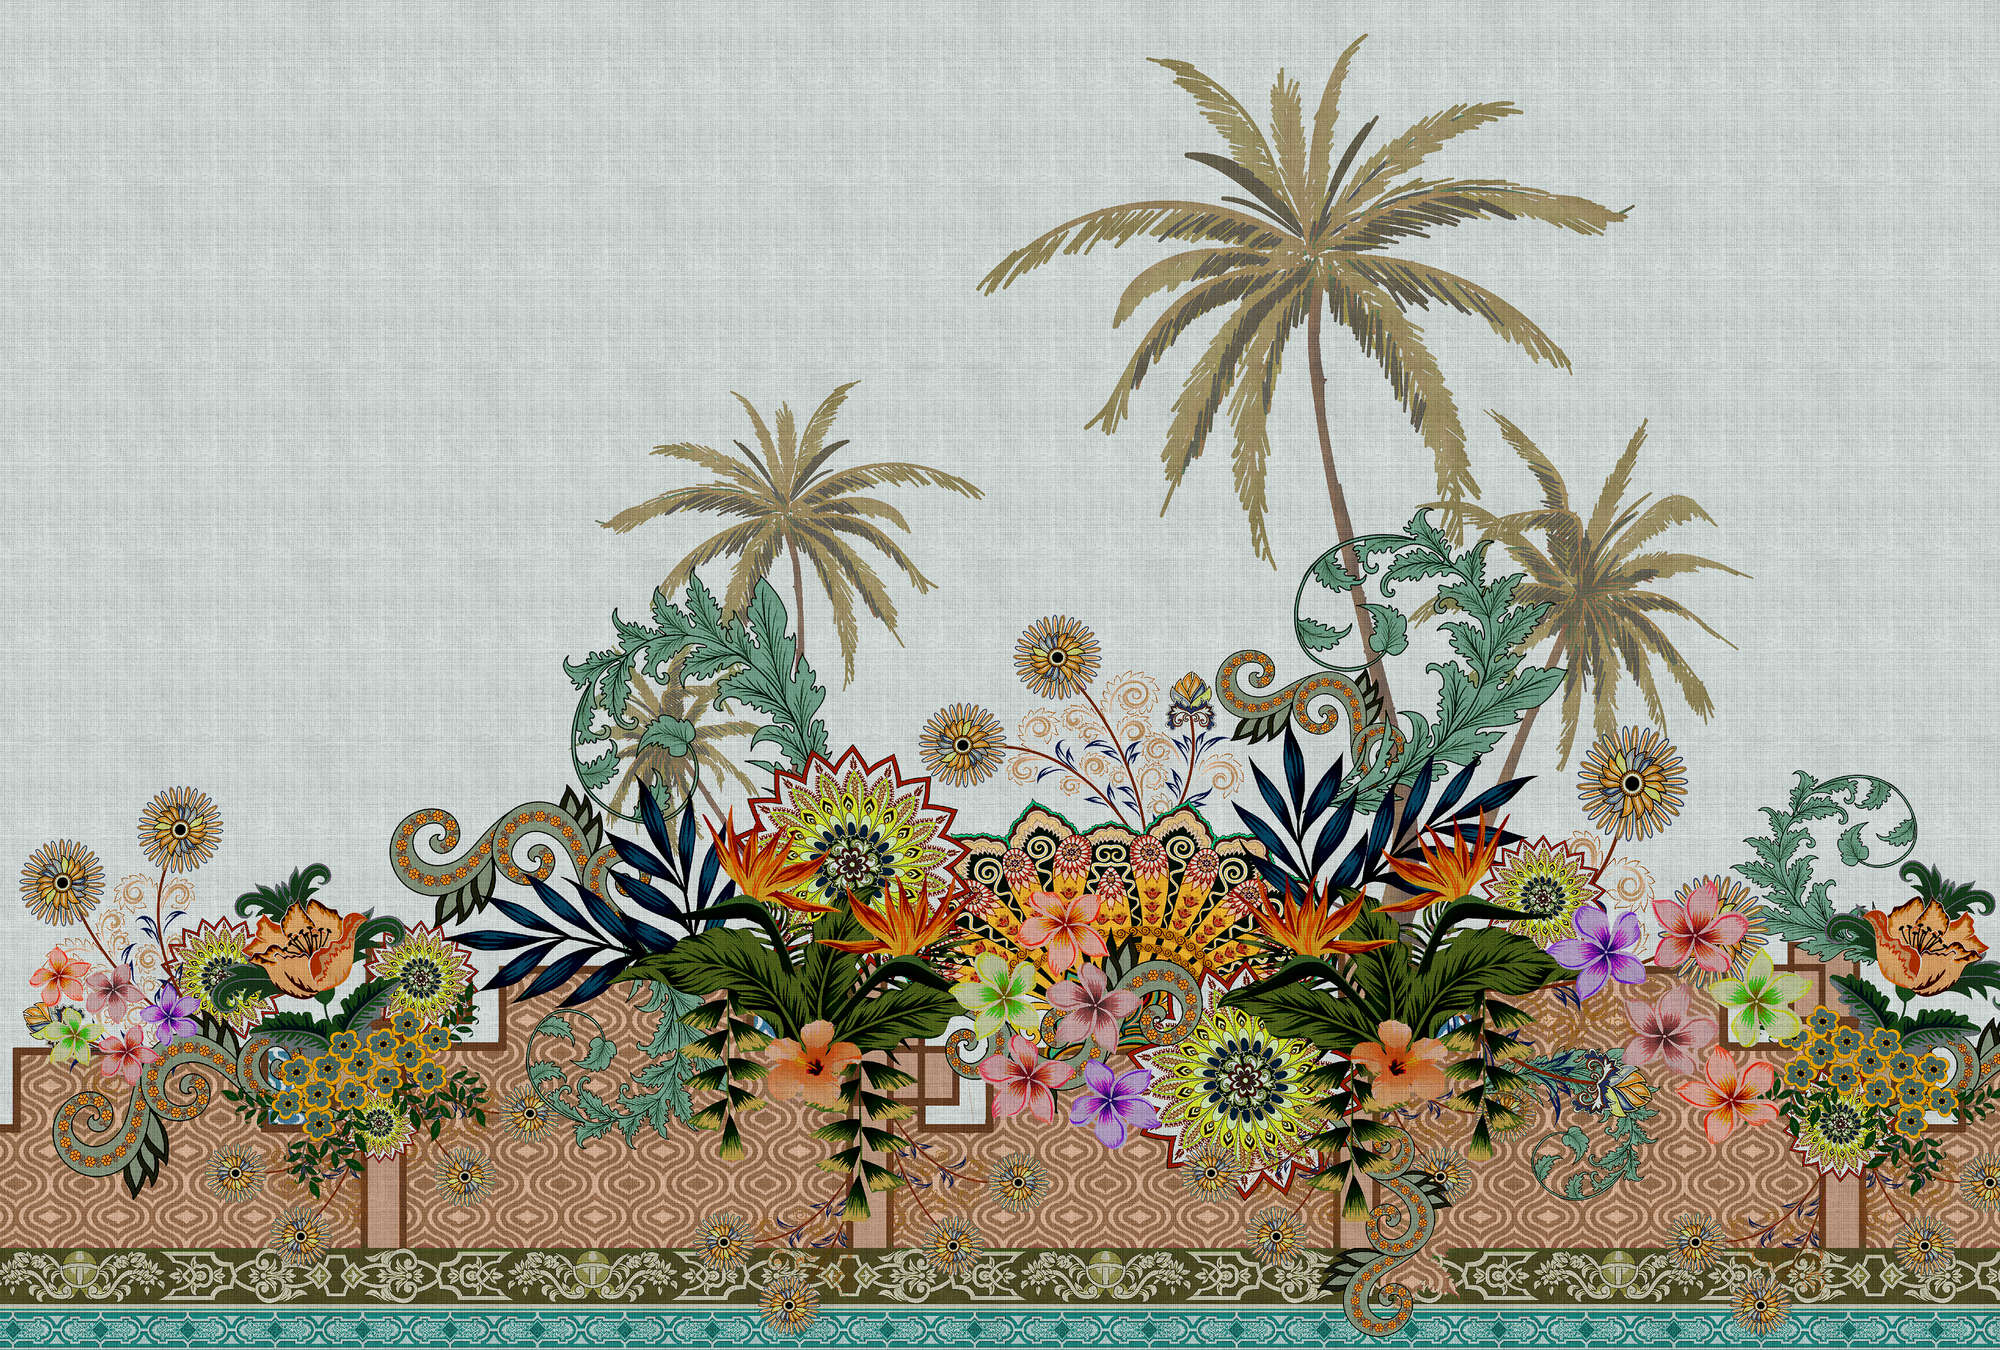             Oriental Garden 3 - Muurschildering Bloemen Tuin India Stijl
        